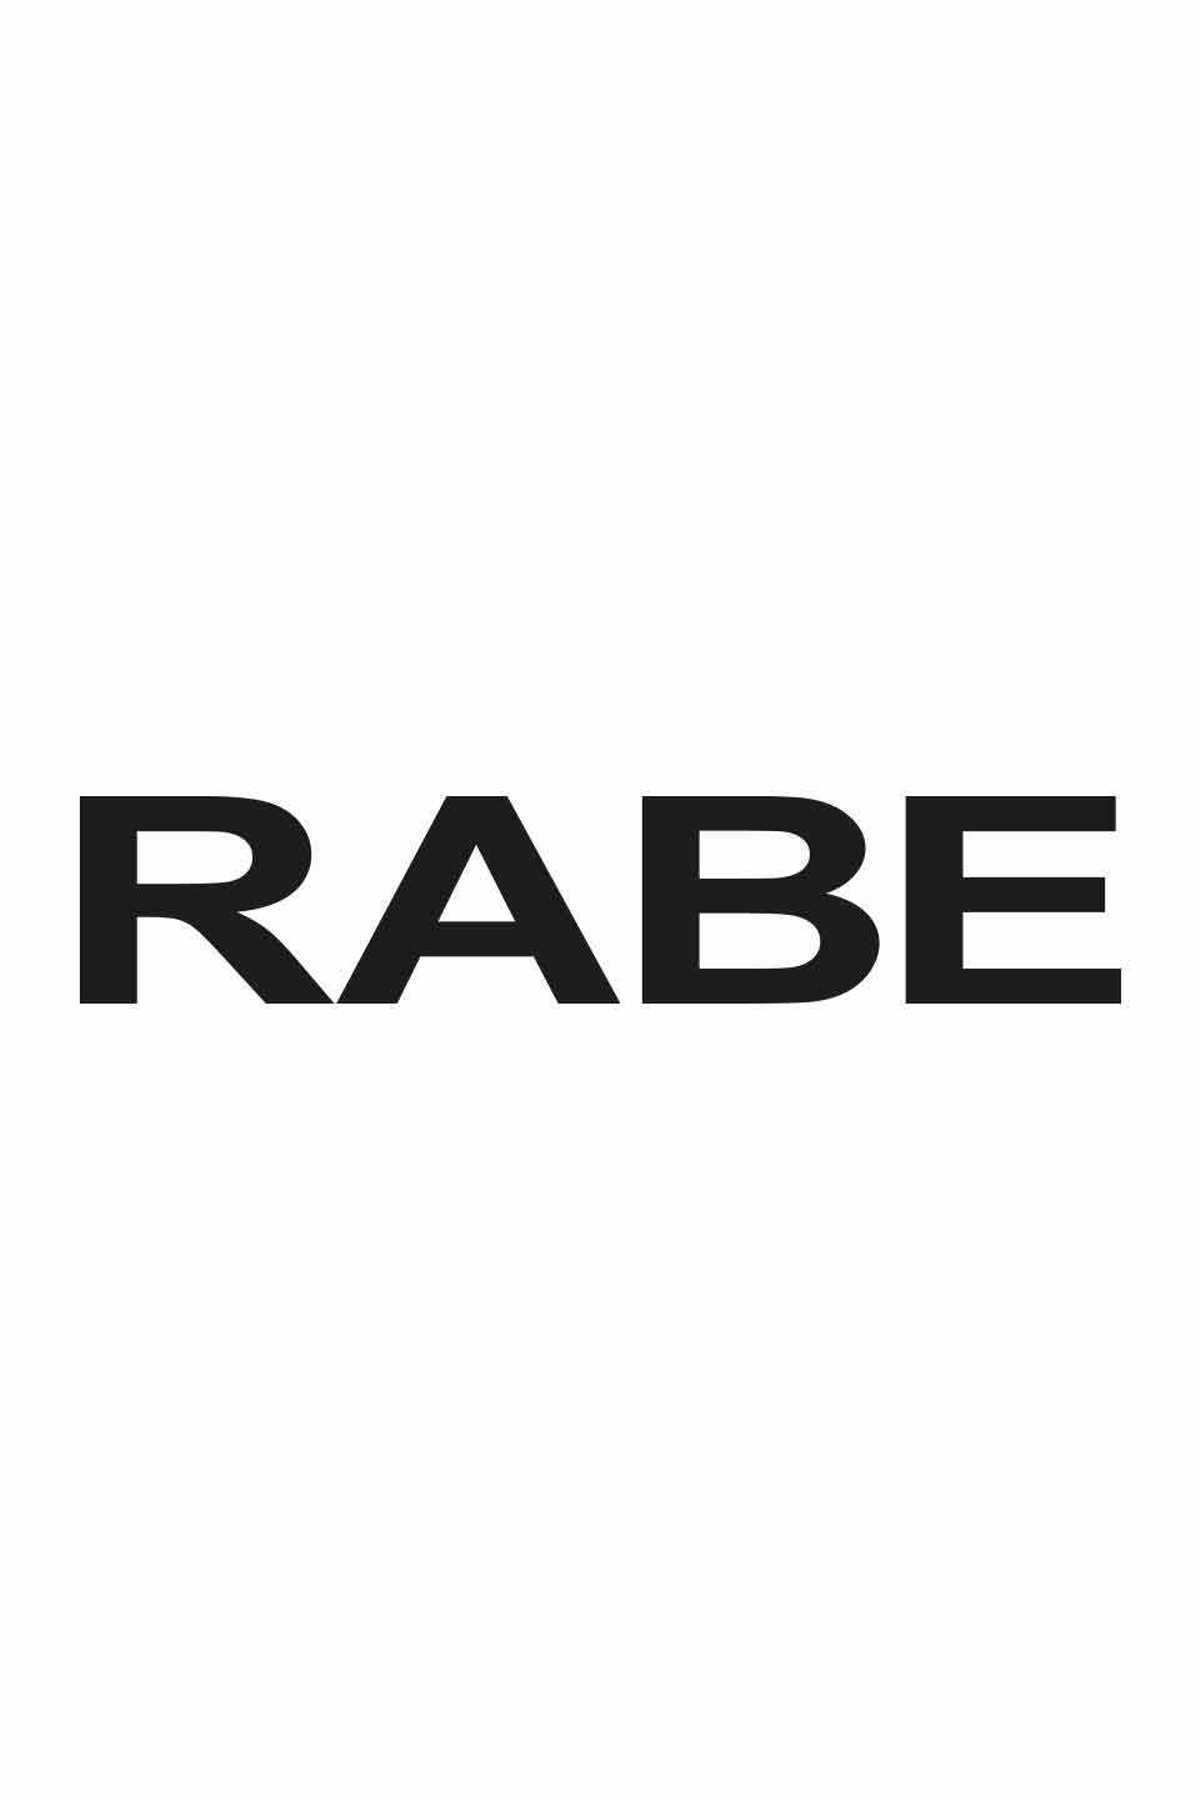 Rabe | Mode + Schuh Kämpf - Markenmode und Schuhe